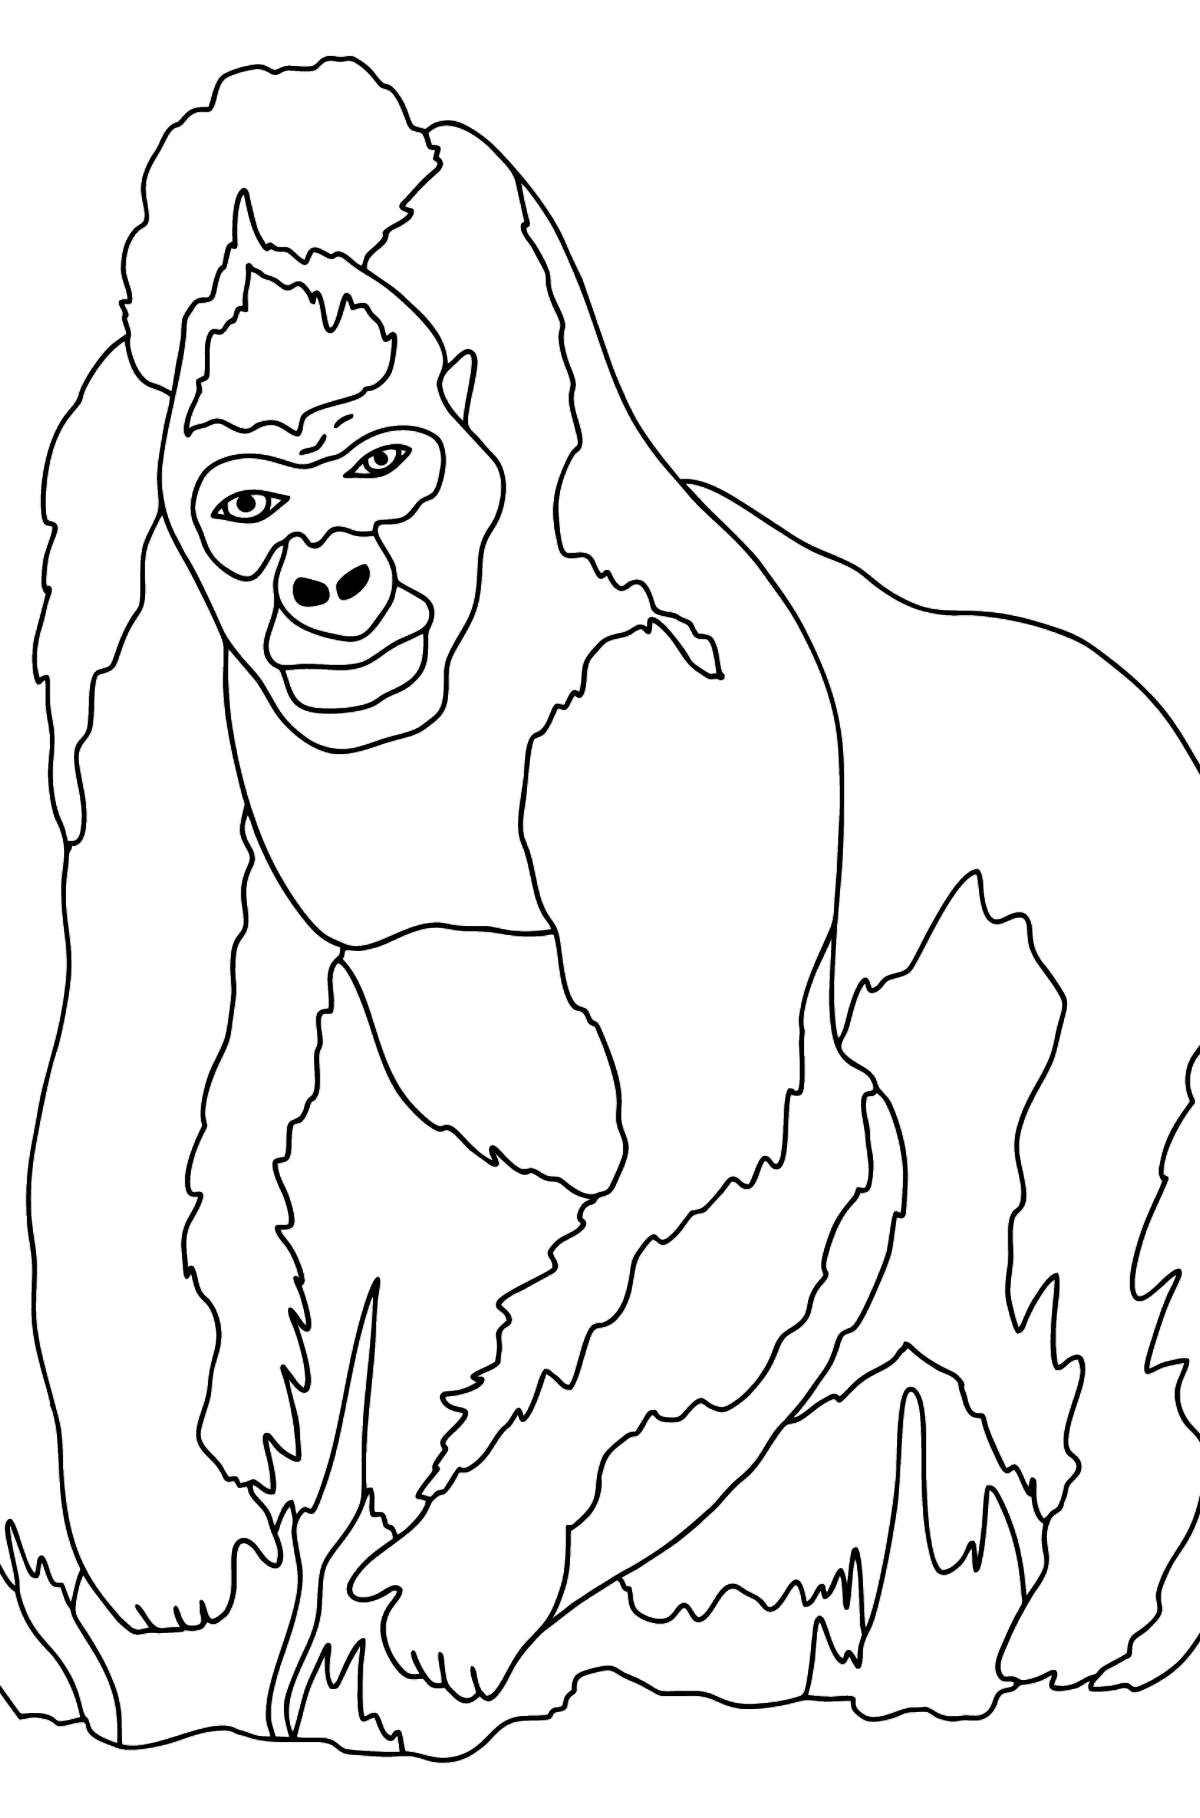 Desenho de gorila para colorir (difícil) - Imagens para Colorir para Crianças